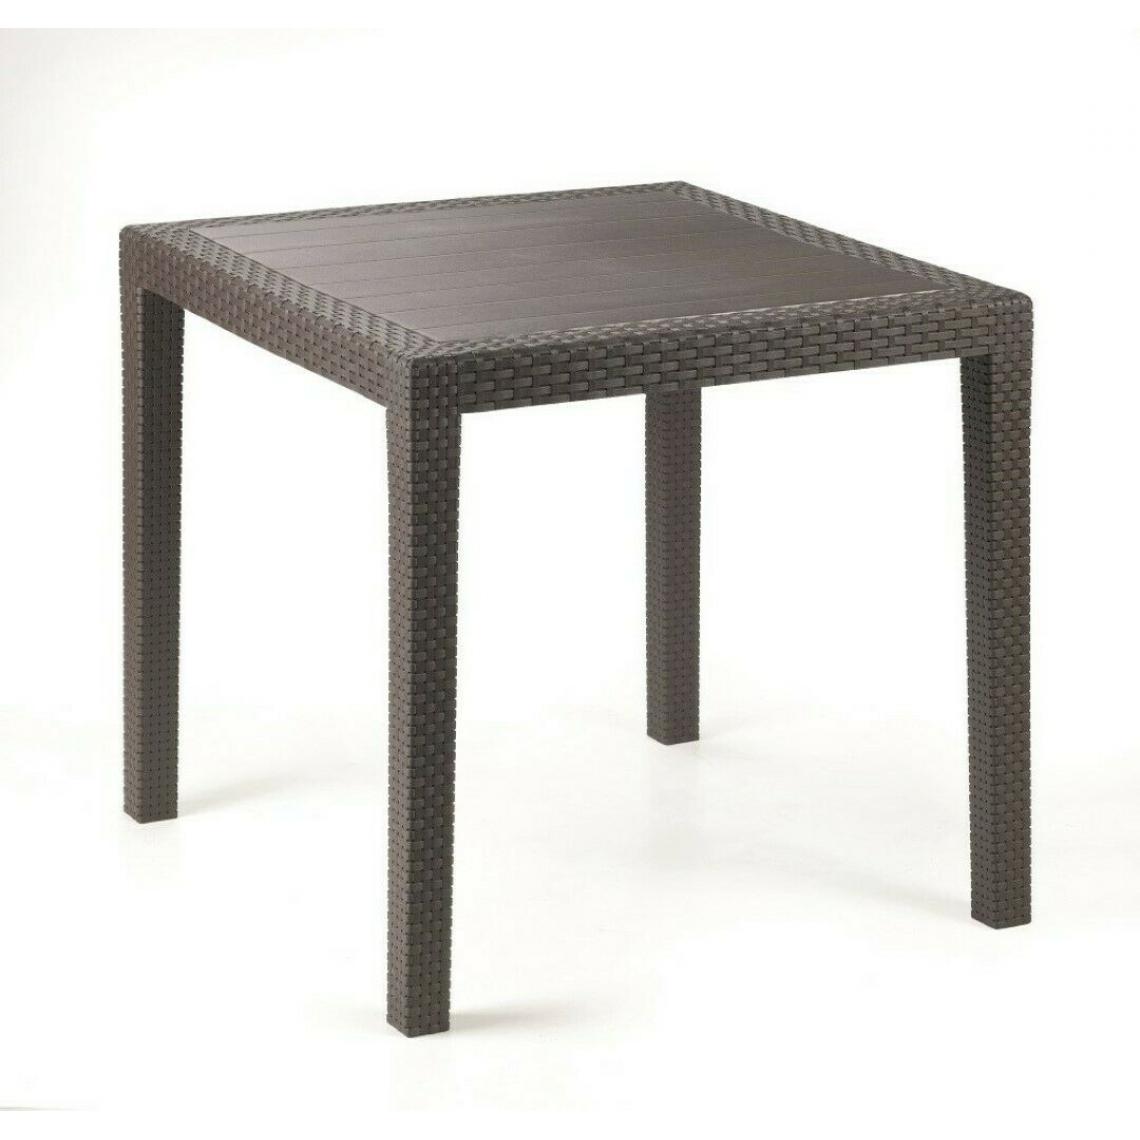 Alter - Table d'extérieur carrée, structure en résine dure effet rotin, Made in Italy, 80 x 80 x 72 cm, couleur marron - Tables à manger